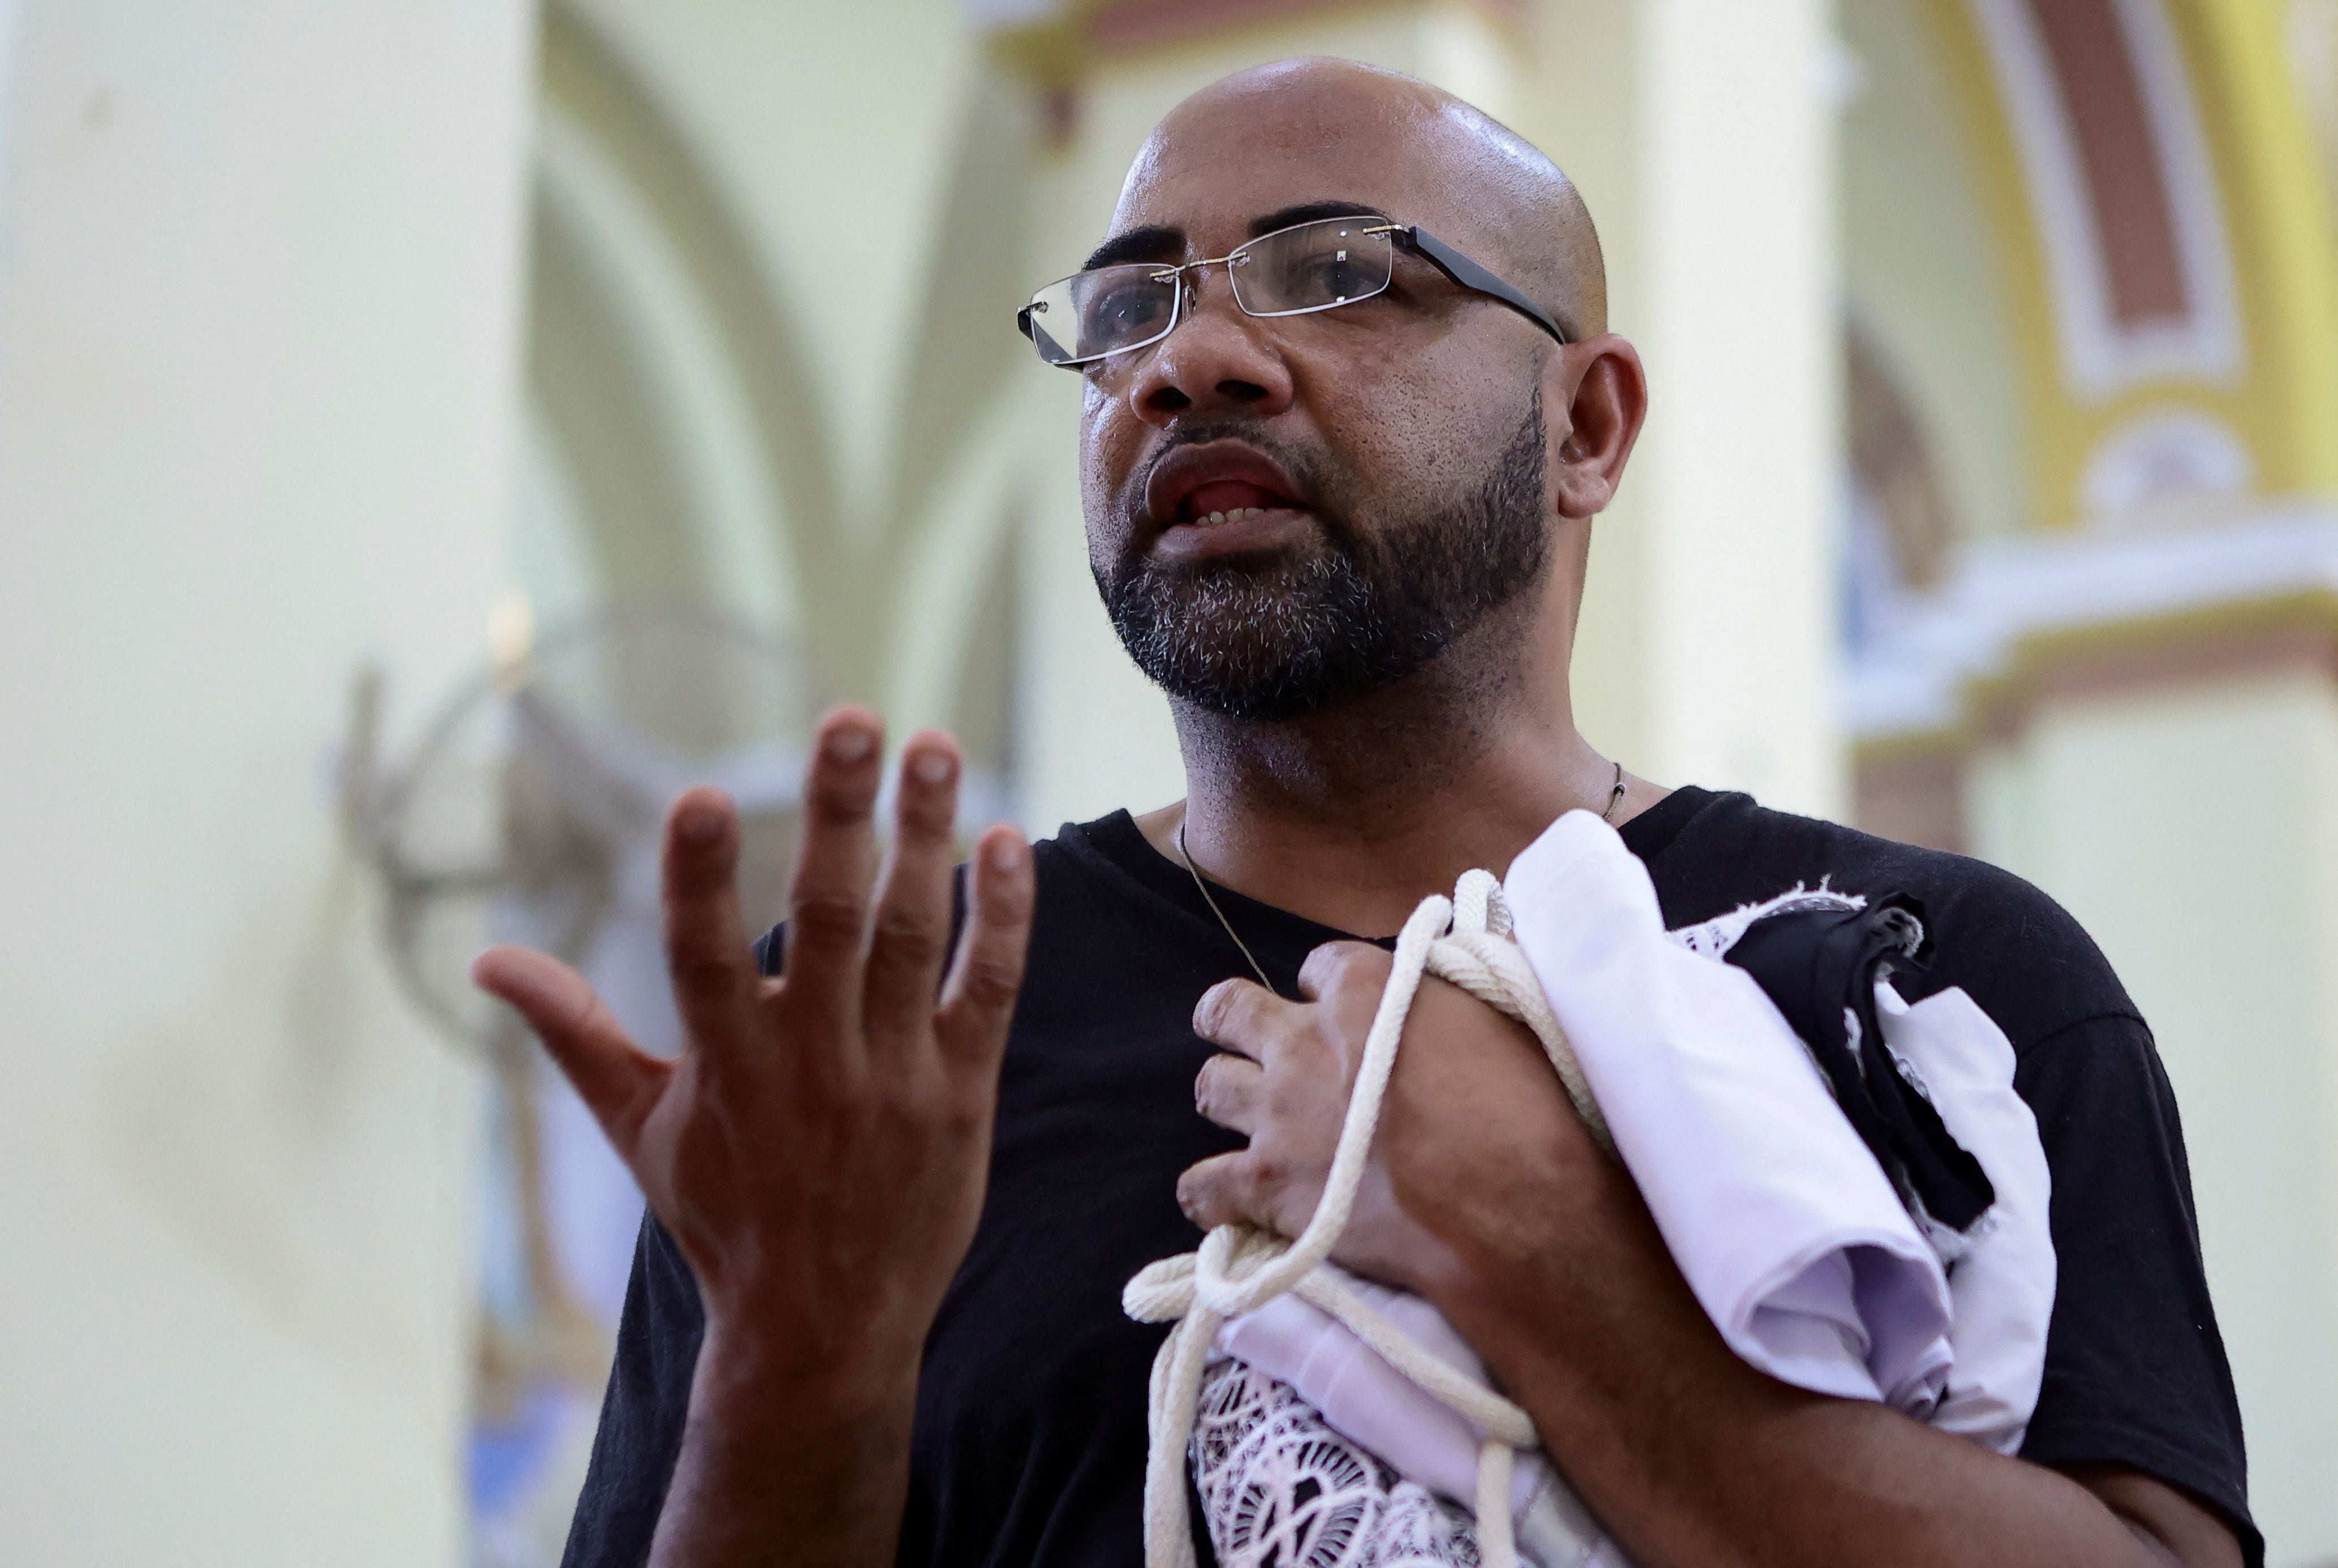 Del total de detenidos, se confirmó la liberación de 9 personas”. Ese reporte incluye la expulsión del país del sacerdote panameño Donaciano Alarcón. (REUTERS)